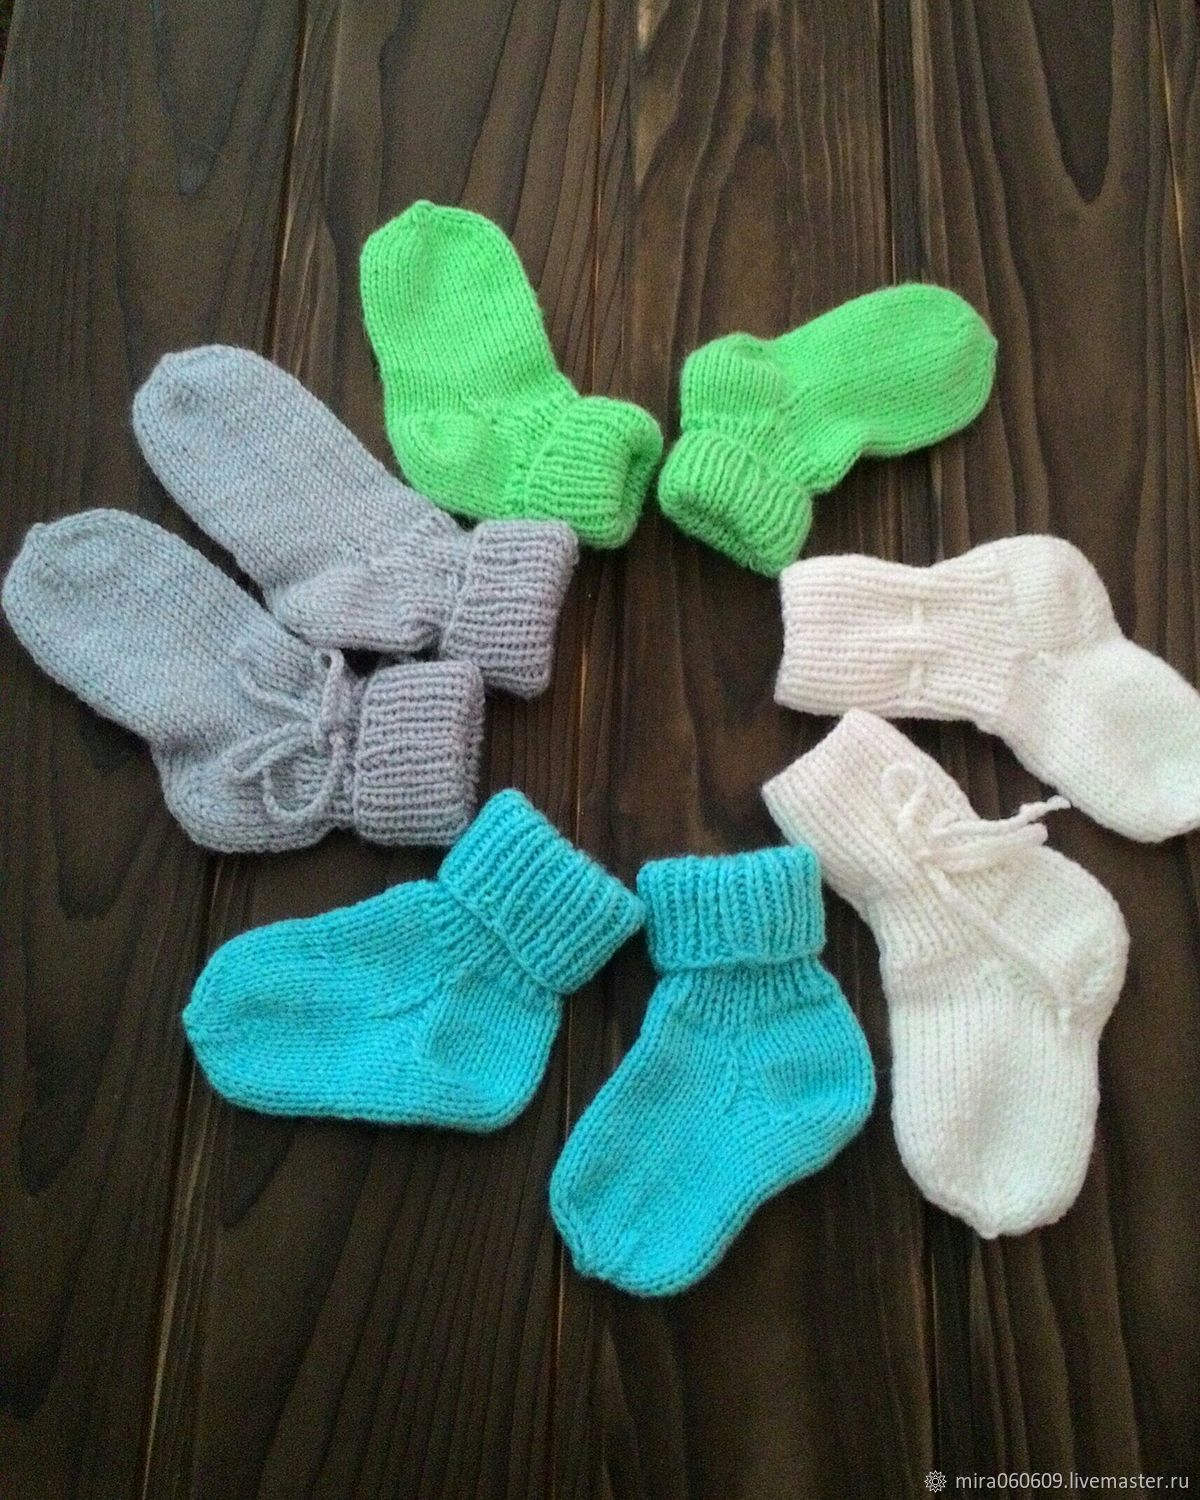 Вязаные носочки для новорожденного